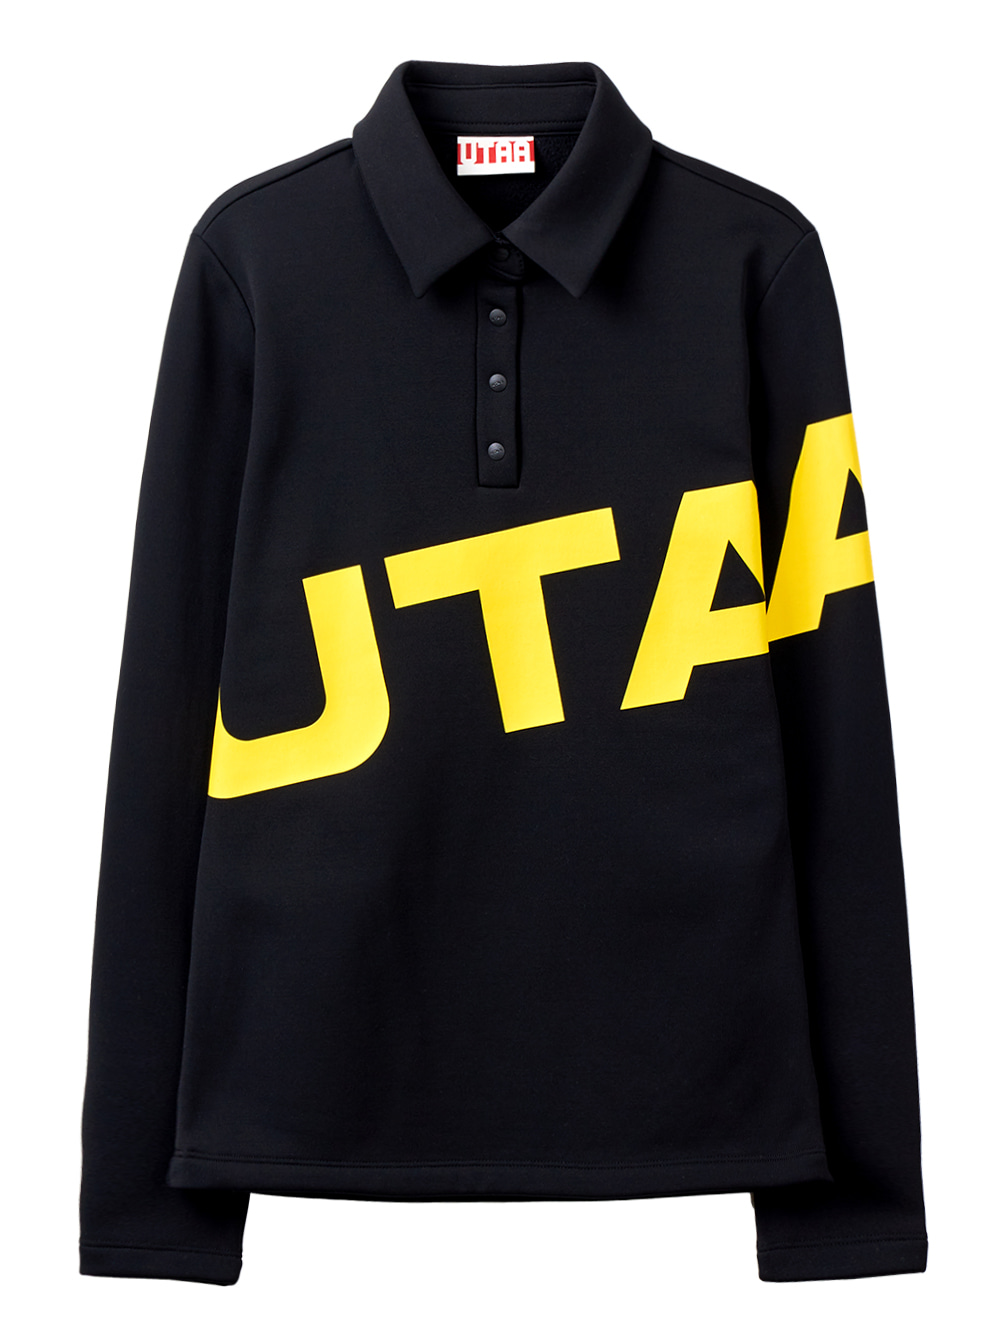 UTAA Swing Fit Bounce Logo Winter PK Sleeve  : Women&#039;s Black  (UB1TLF190BK)